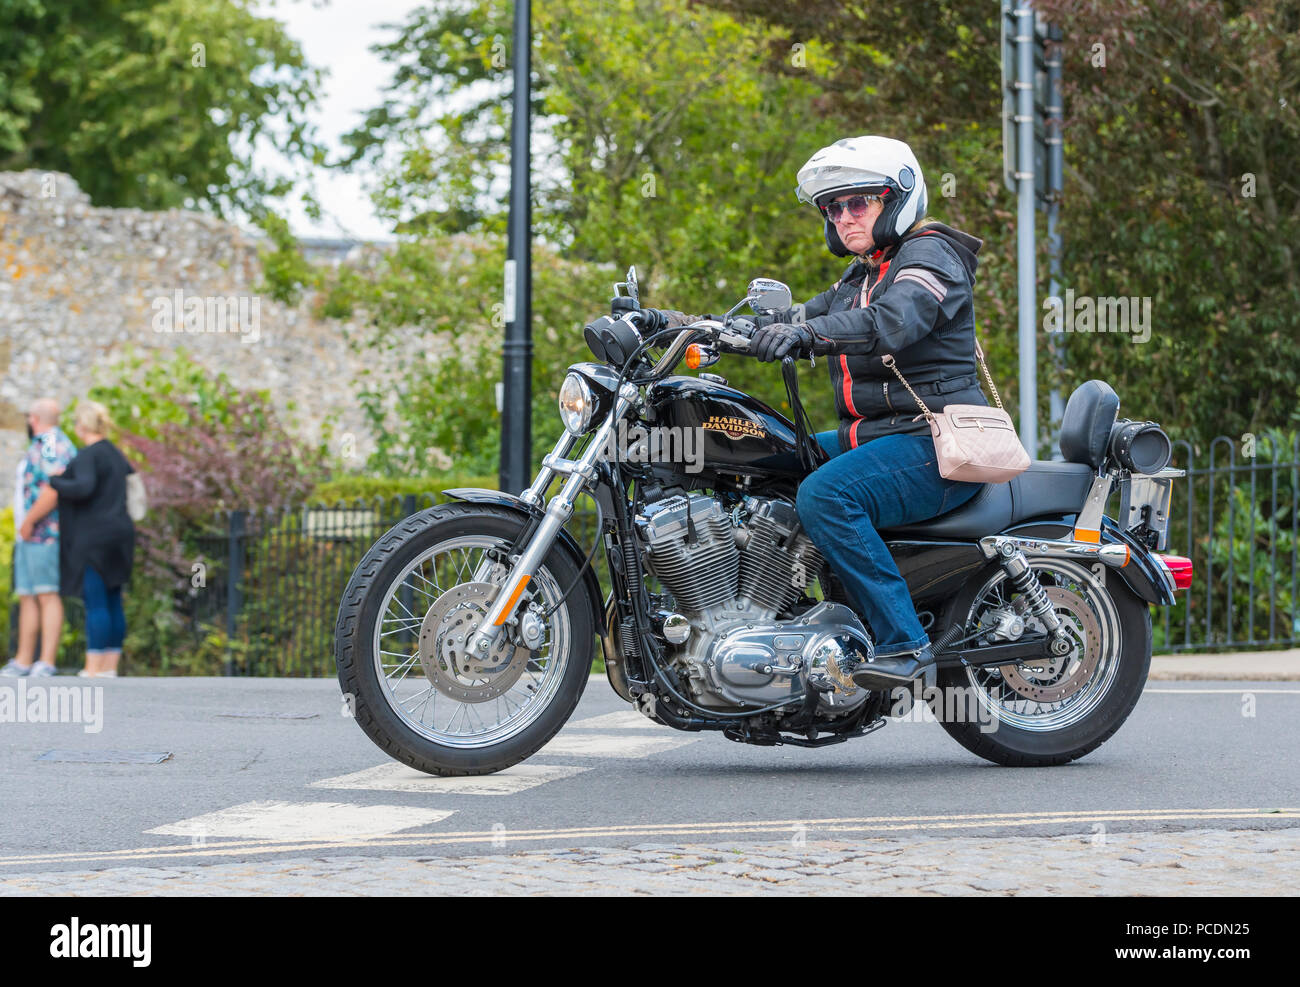 Donna che cavalca una motocicletta Harley Davidson Bike 883 Sportster con borsa sopra le spalle nel Regno Unito. Motociclista femminile. Foto Stock